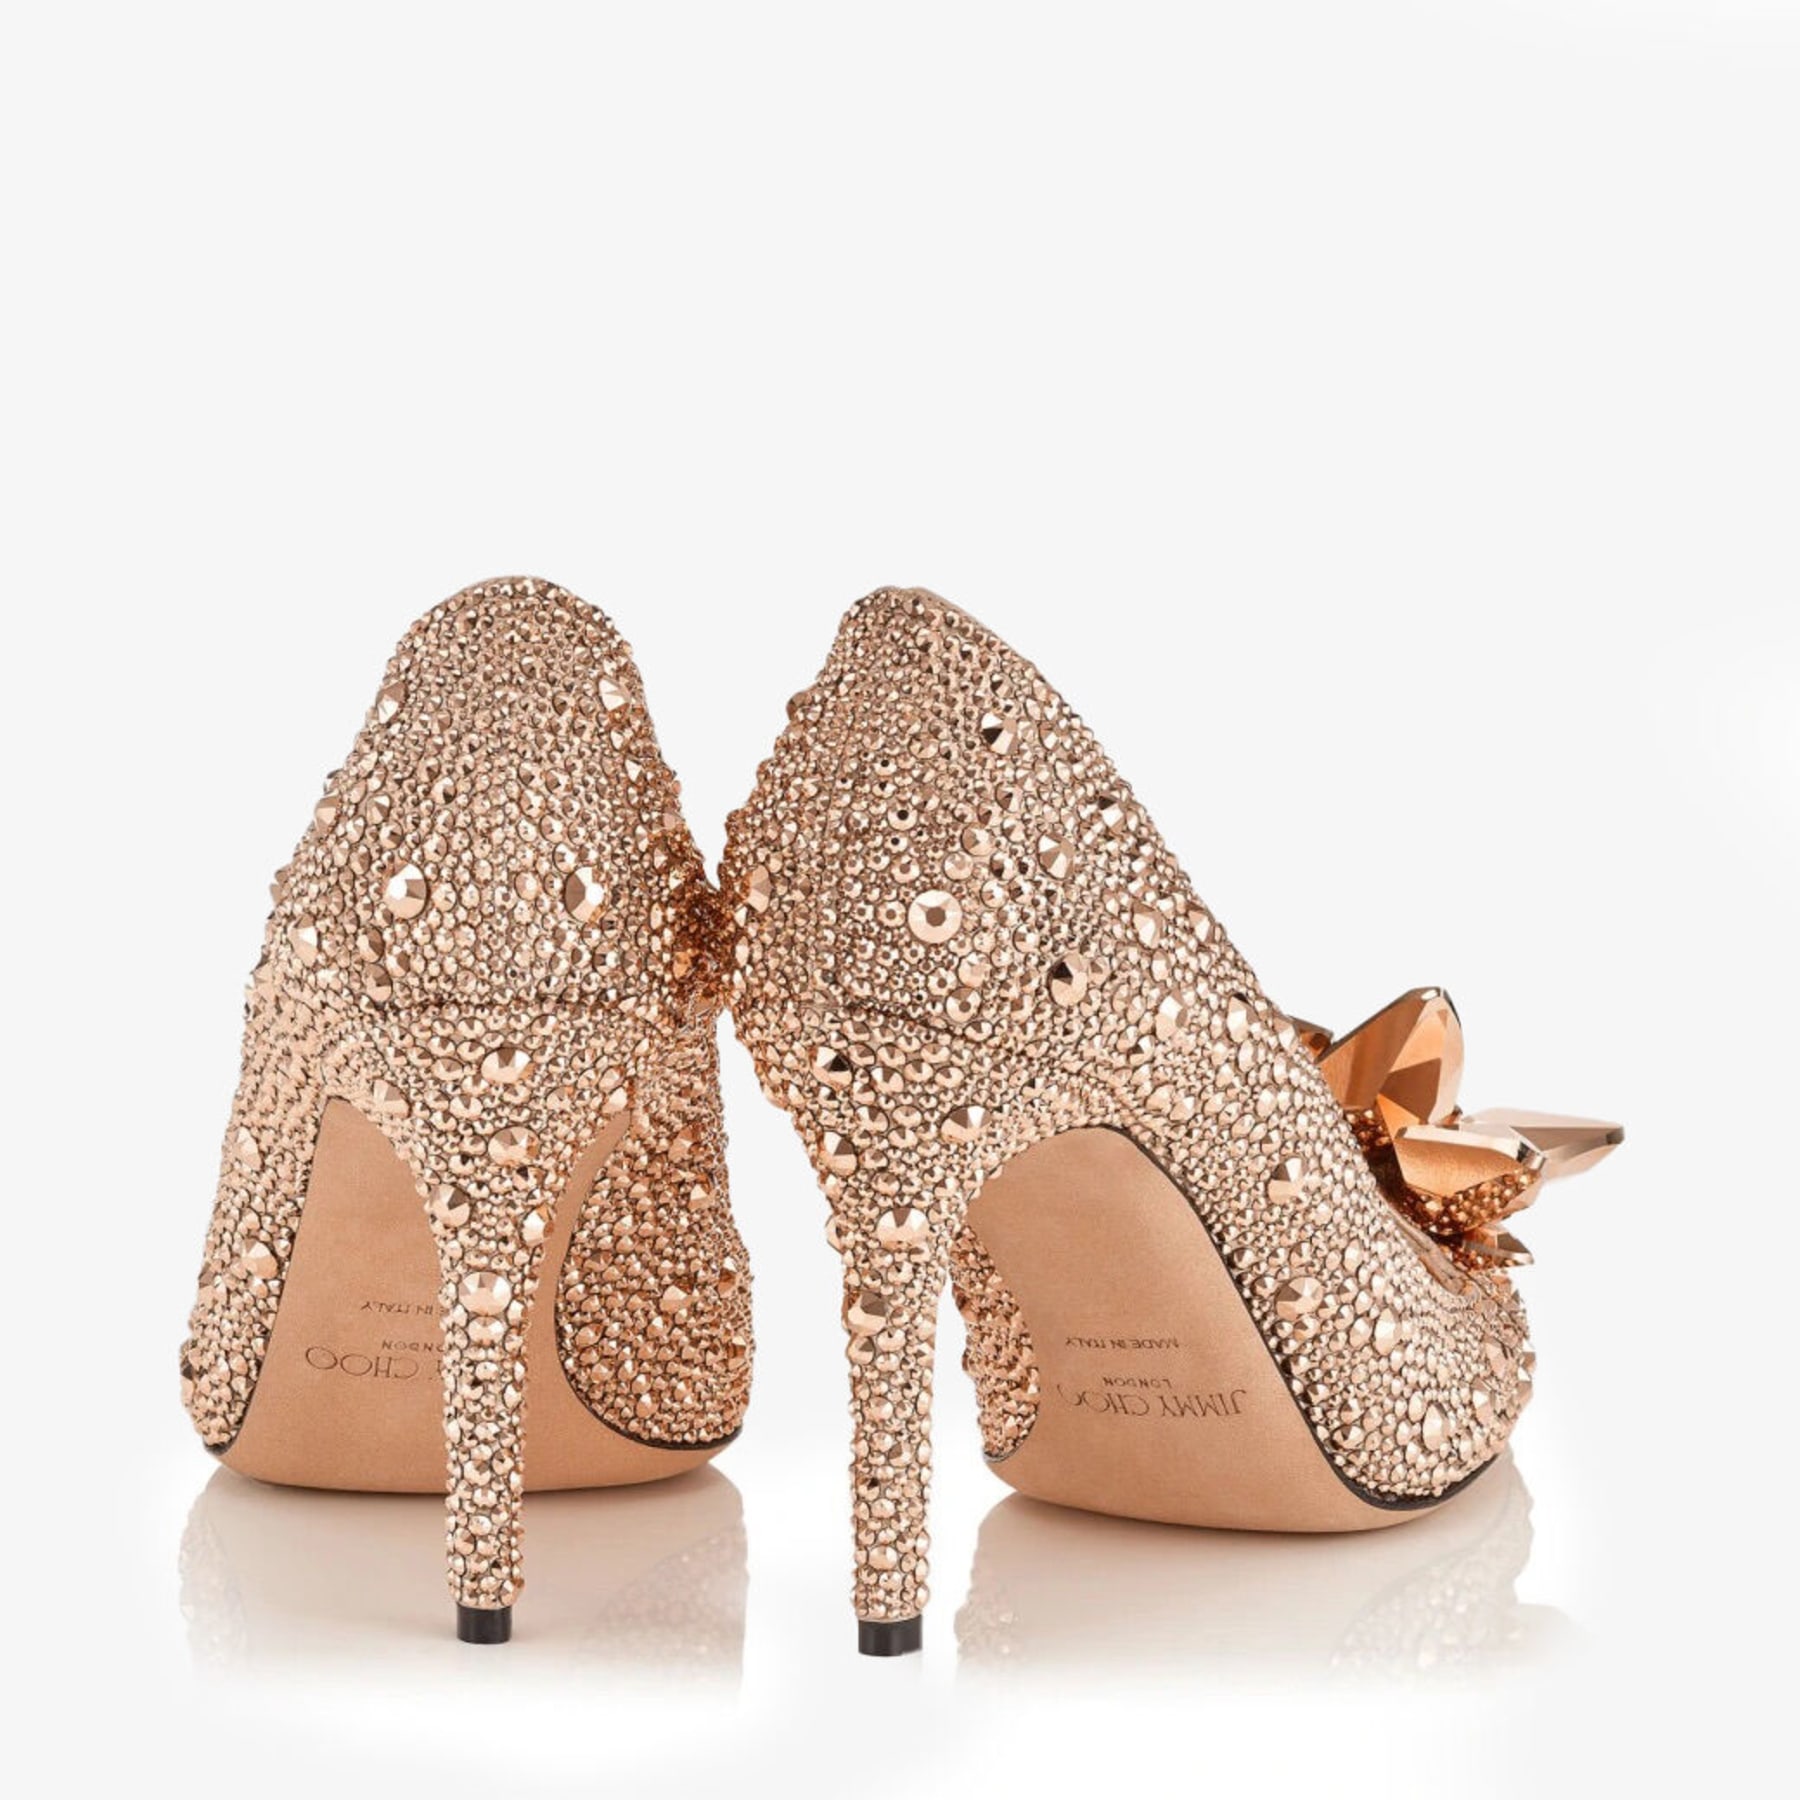 8 Best Rose gold heels wedding ideas | heels, me too shoes, sandals heels-hkpdtq2012.edu.vn